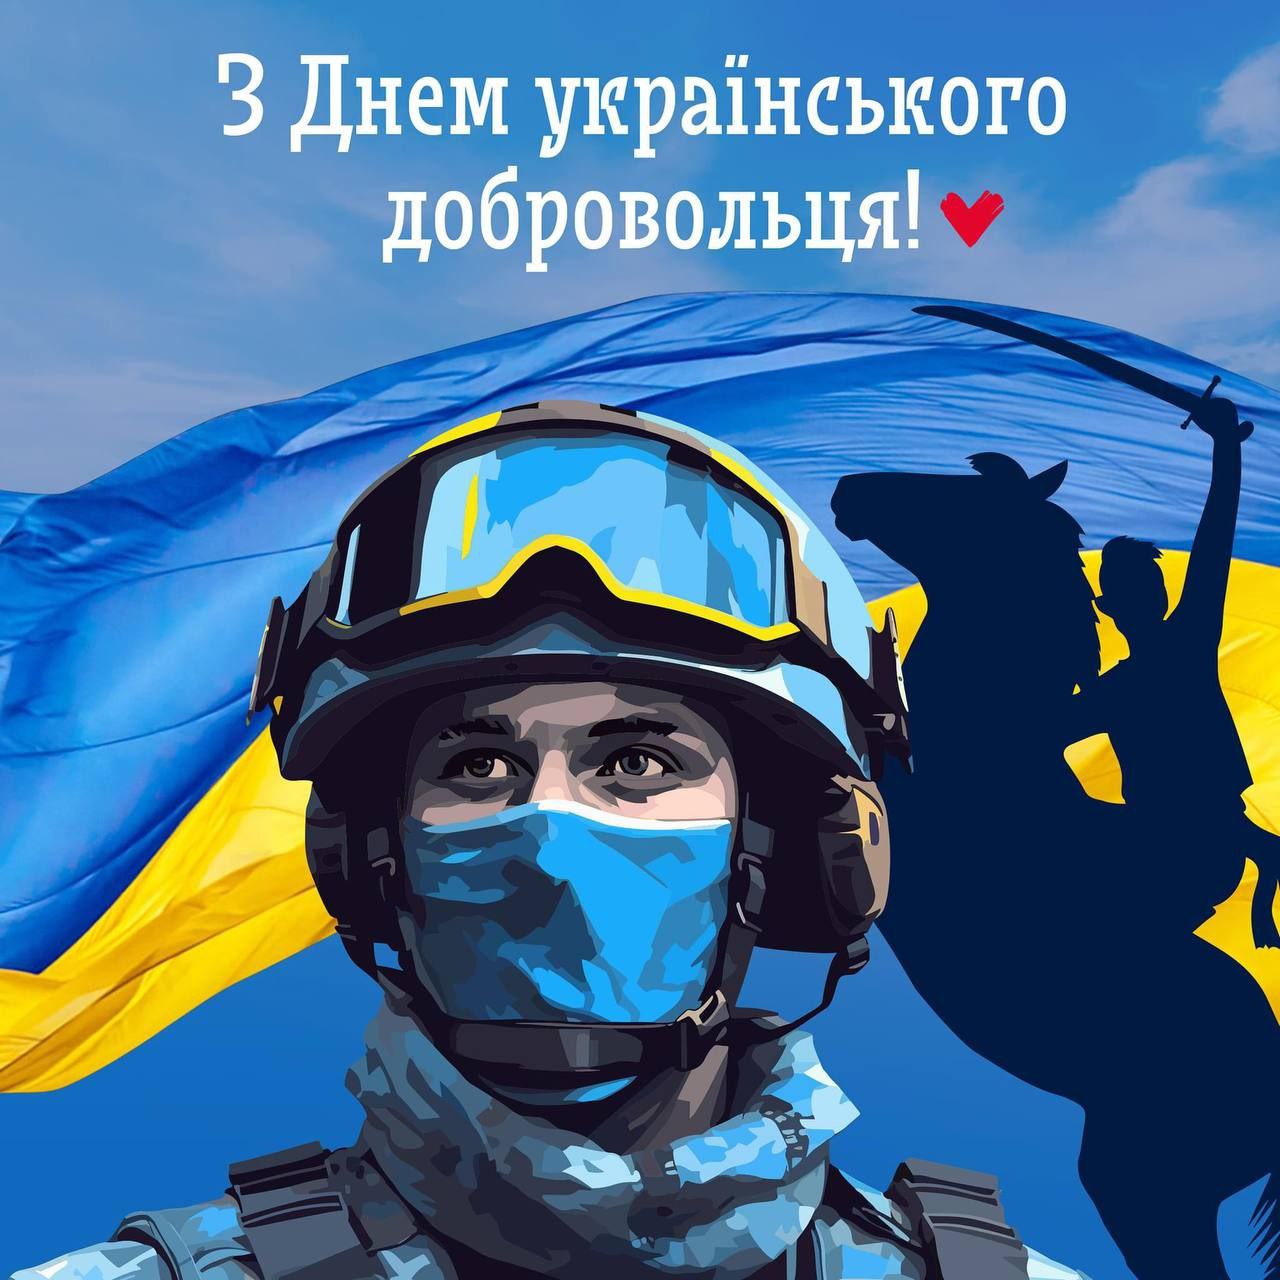 Вітання з Днем українського добровольця